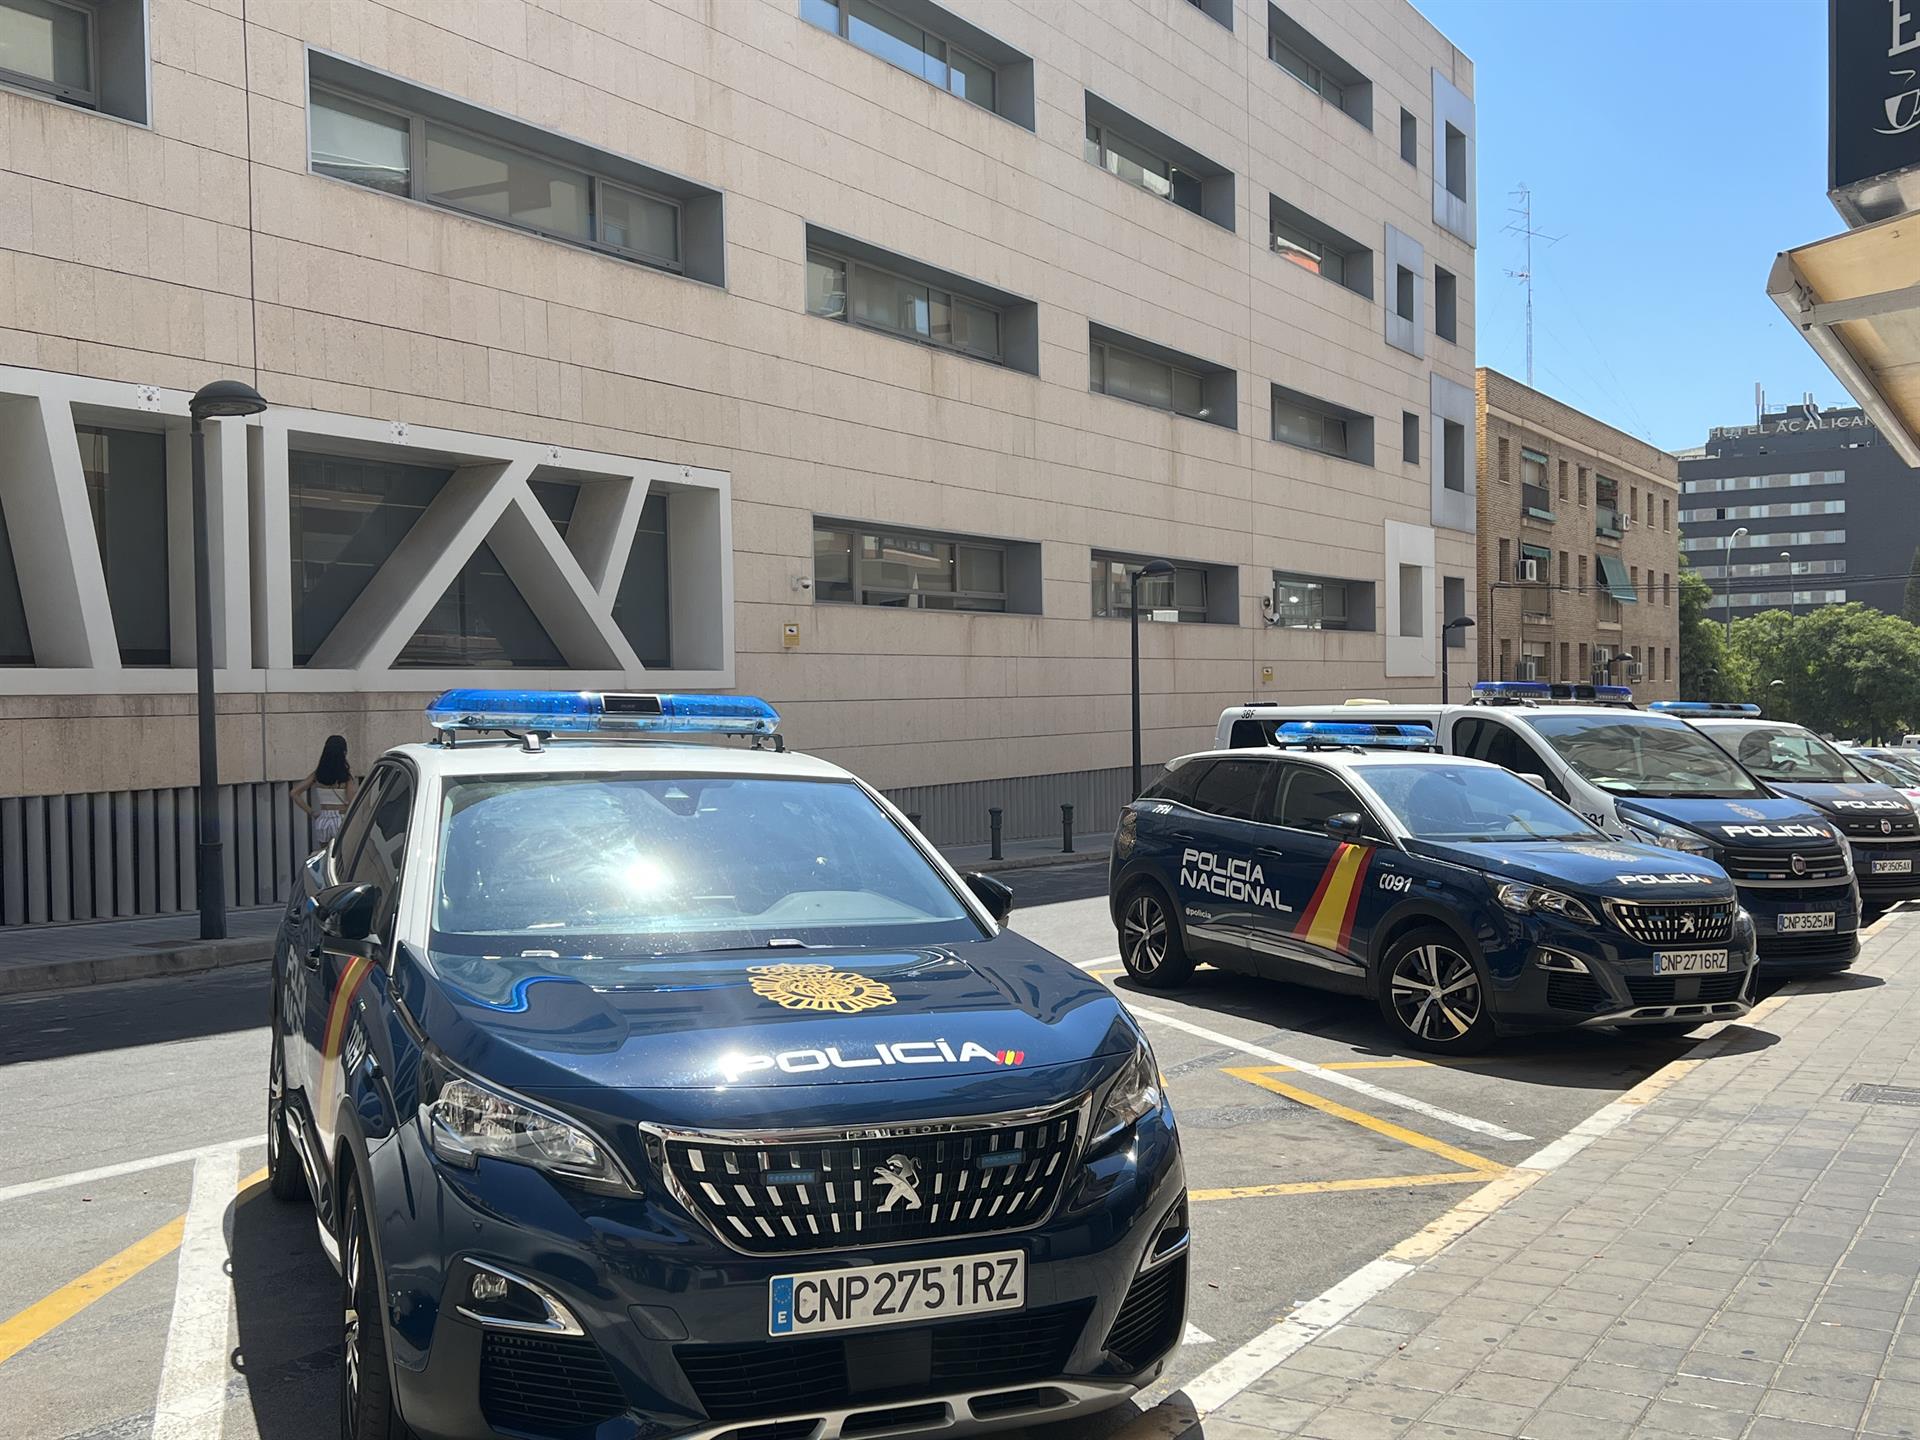 Imagen de varias patrullas de la comisaría de Alicante, facilitada por la Policía Nacional.